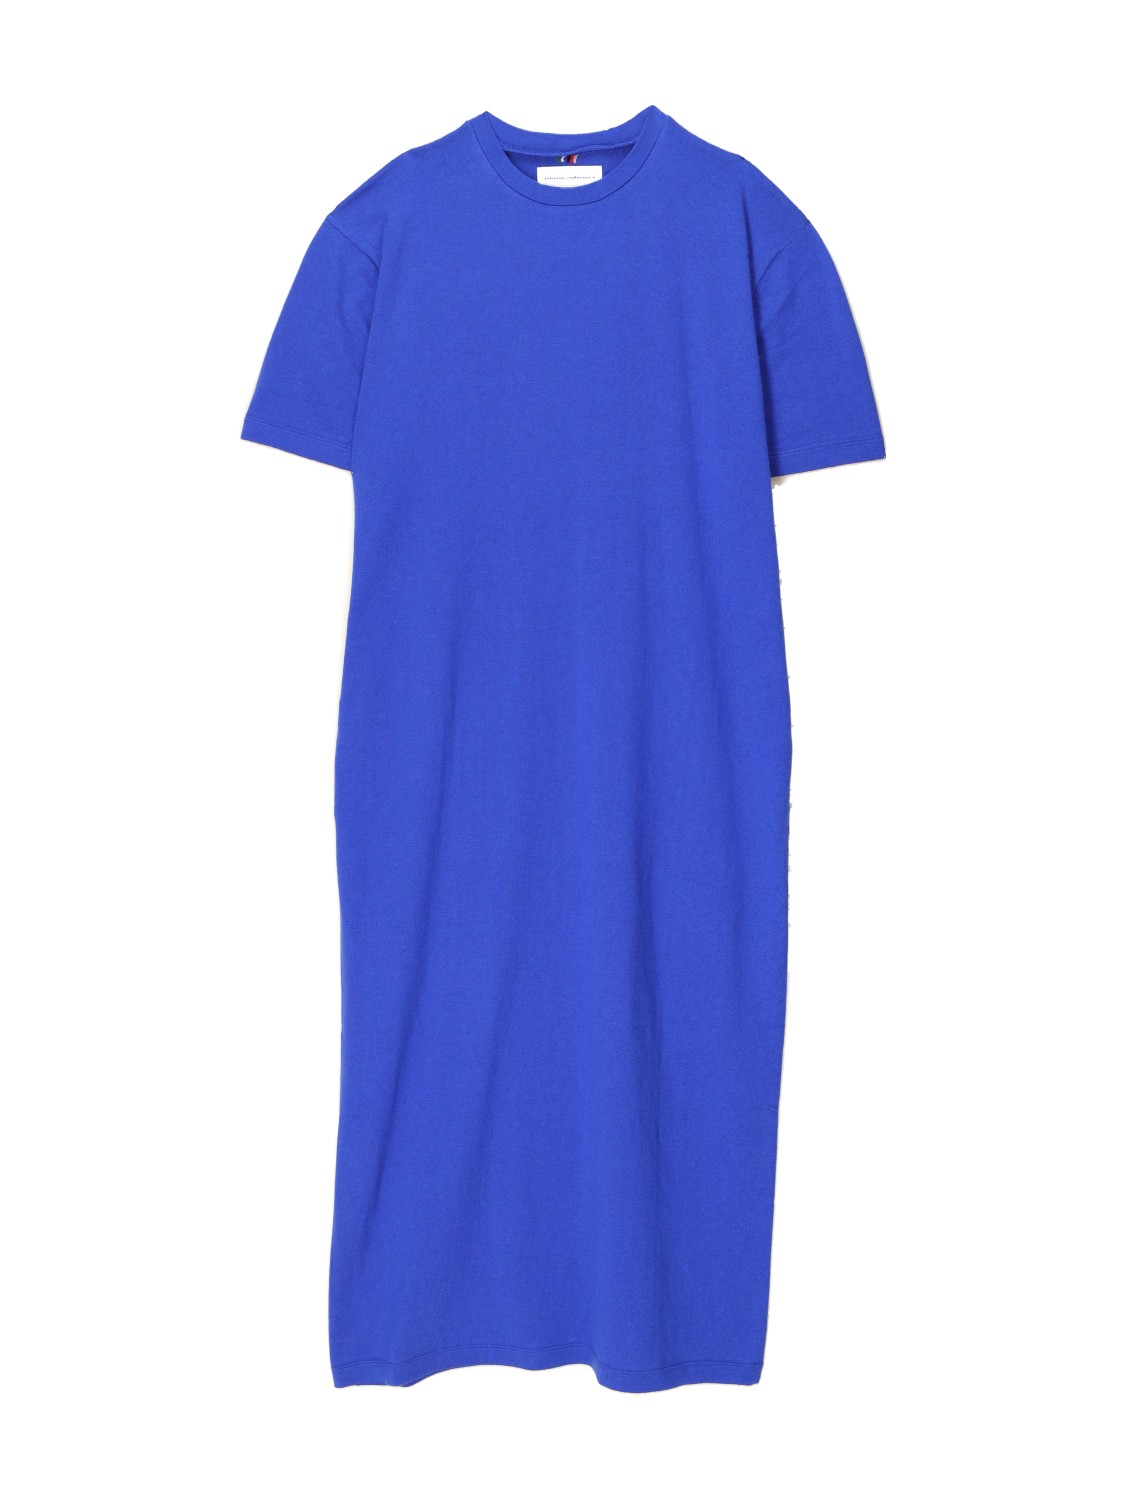 Extreme Cashmere N°321 Kris - Robe t-shirt oversized en cachemire et coton mélangés blau Taille unique